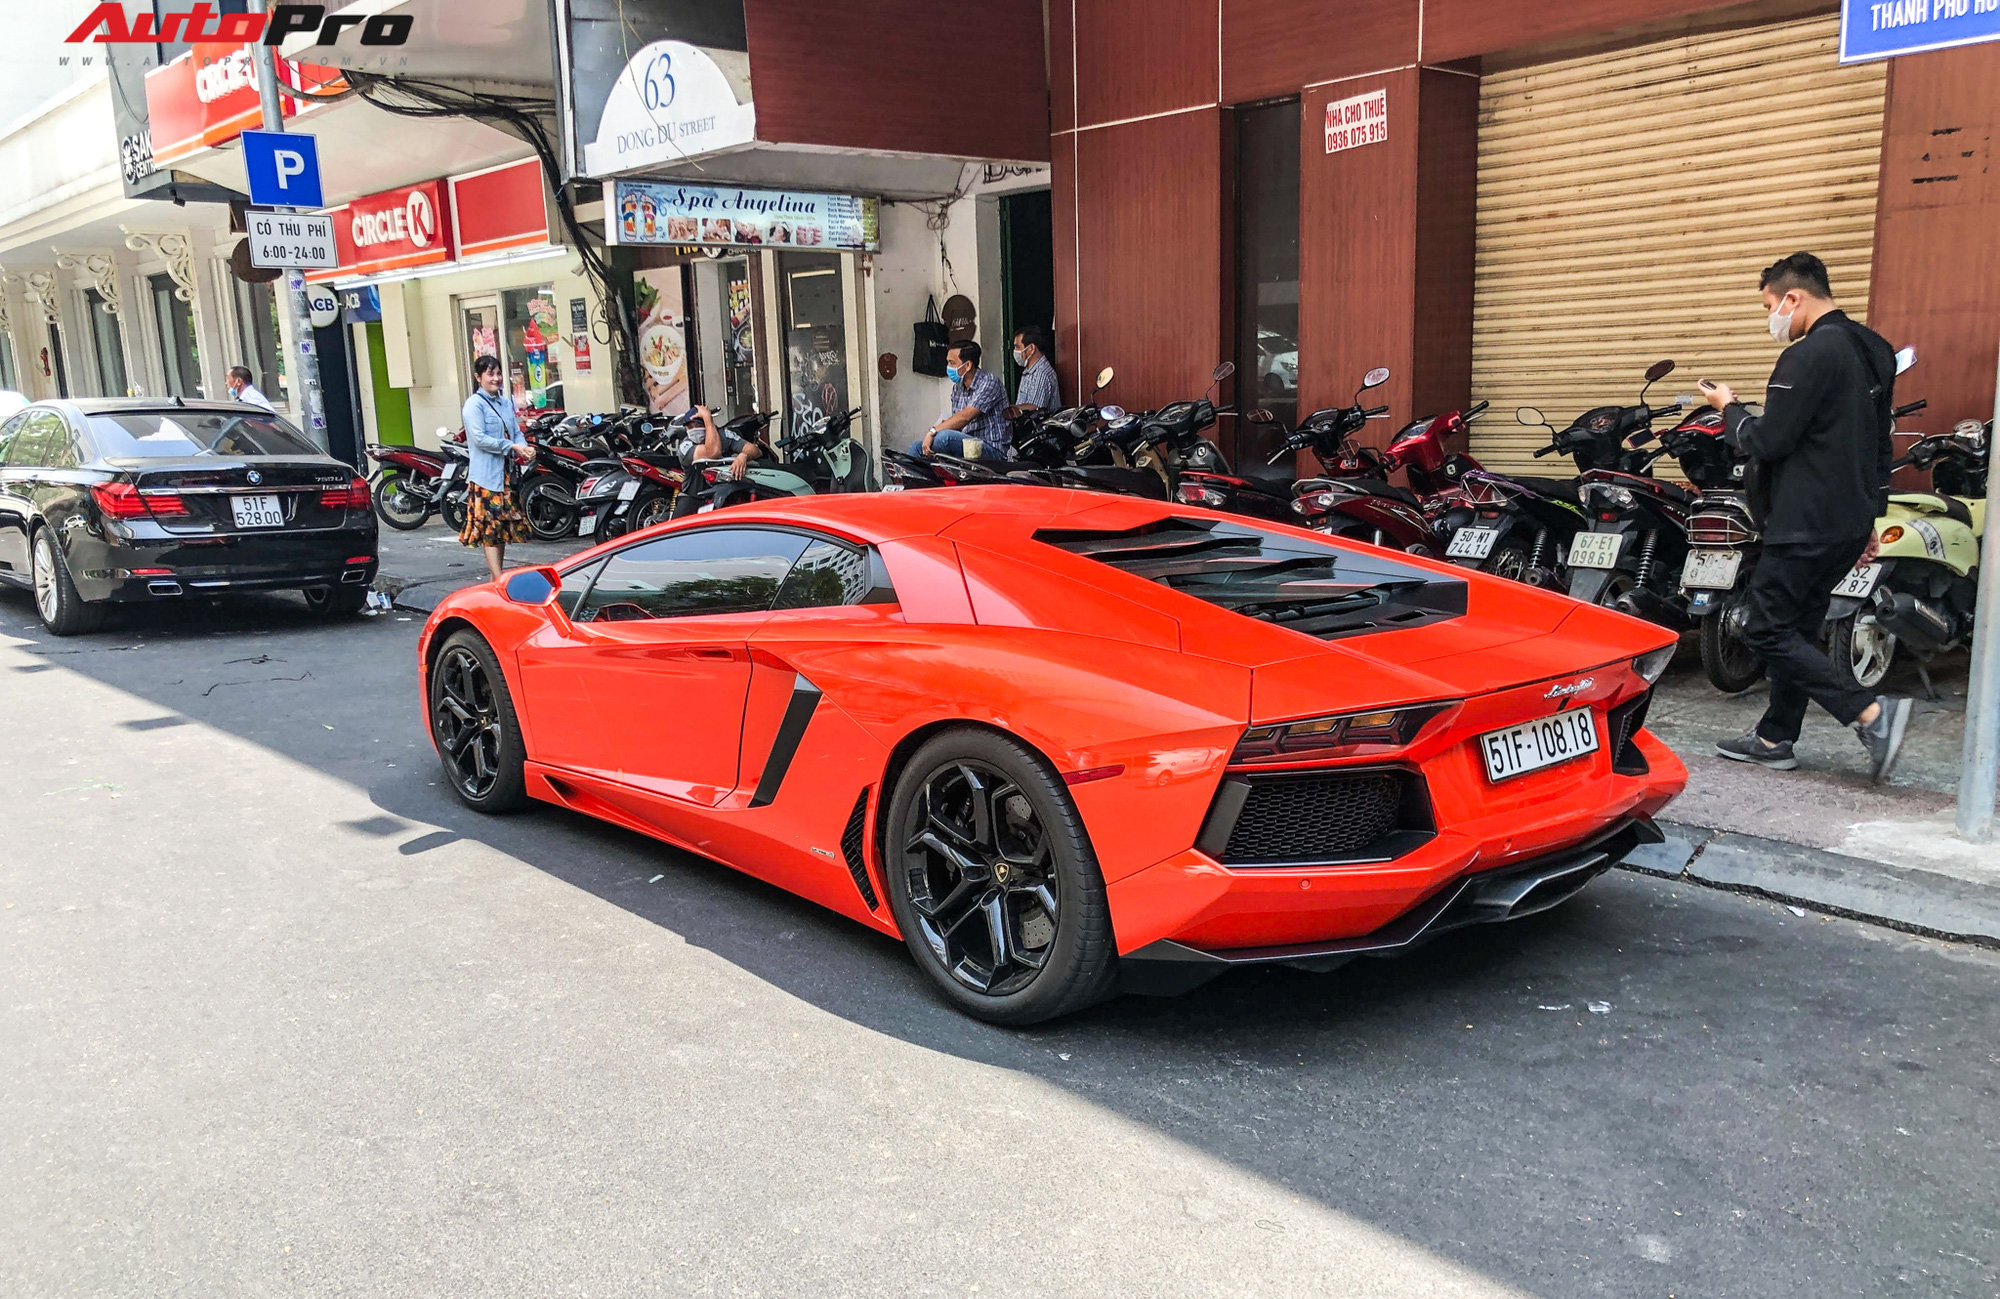 Lamborghini Aventador nổi tiếng của đại gia ngành y tế, từng qua tay Minh nhựa và đóng MV với Tuấn Hưng tái xuất sau thời gian dài nằm garage - Ảnh 6.